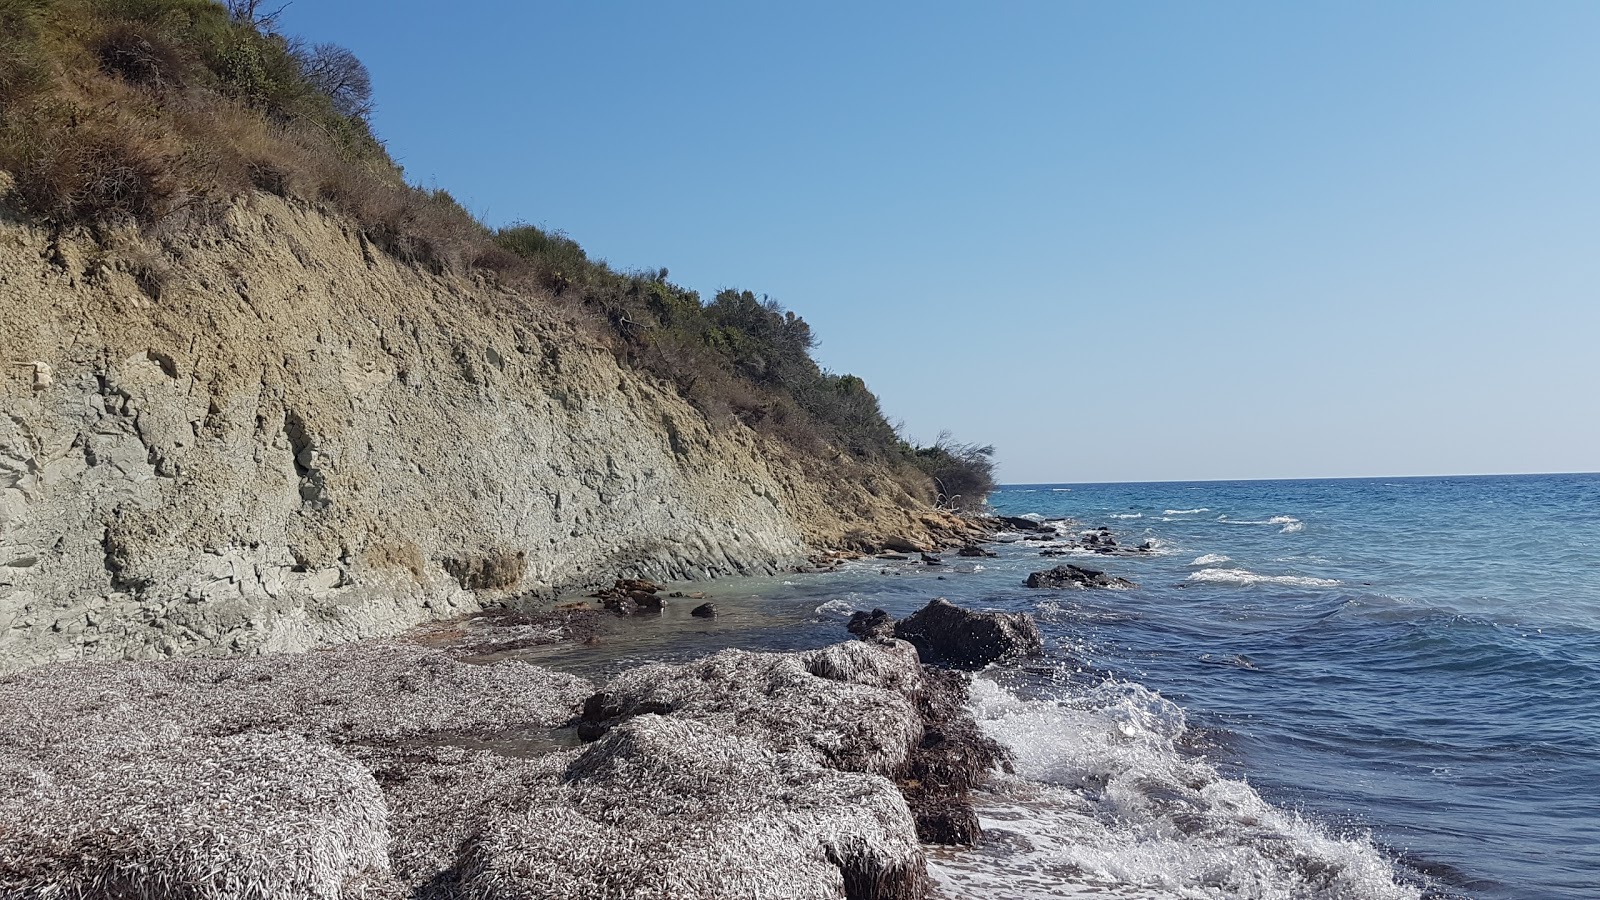 Foto von Megas Choros beach befindet sich in natürlicher umgebung